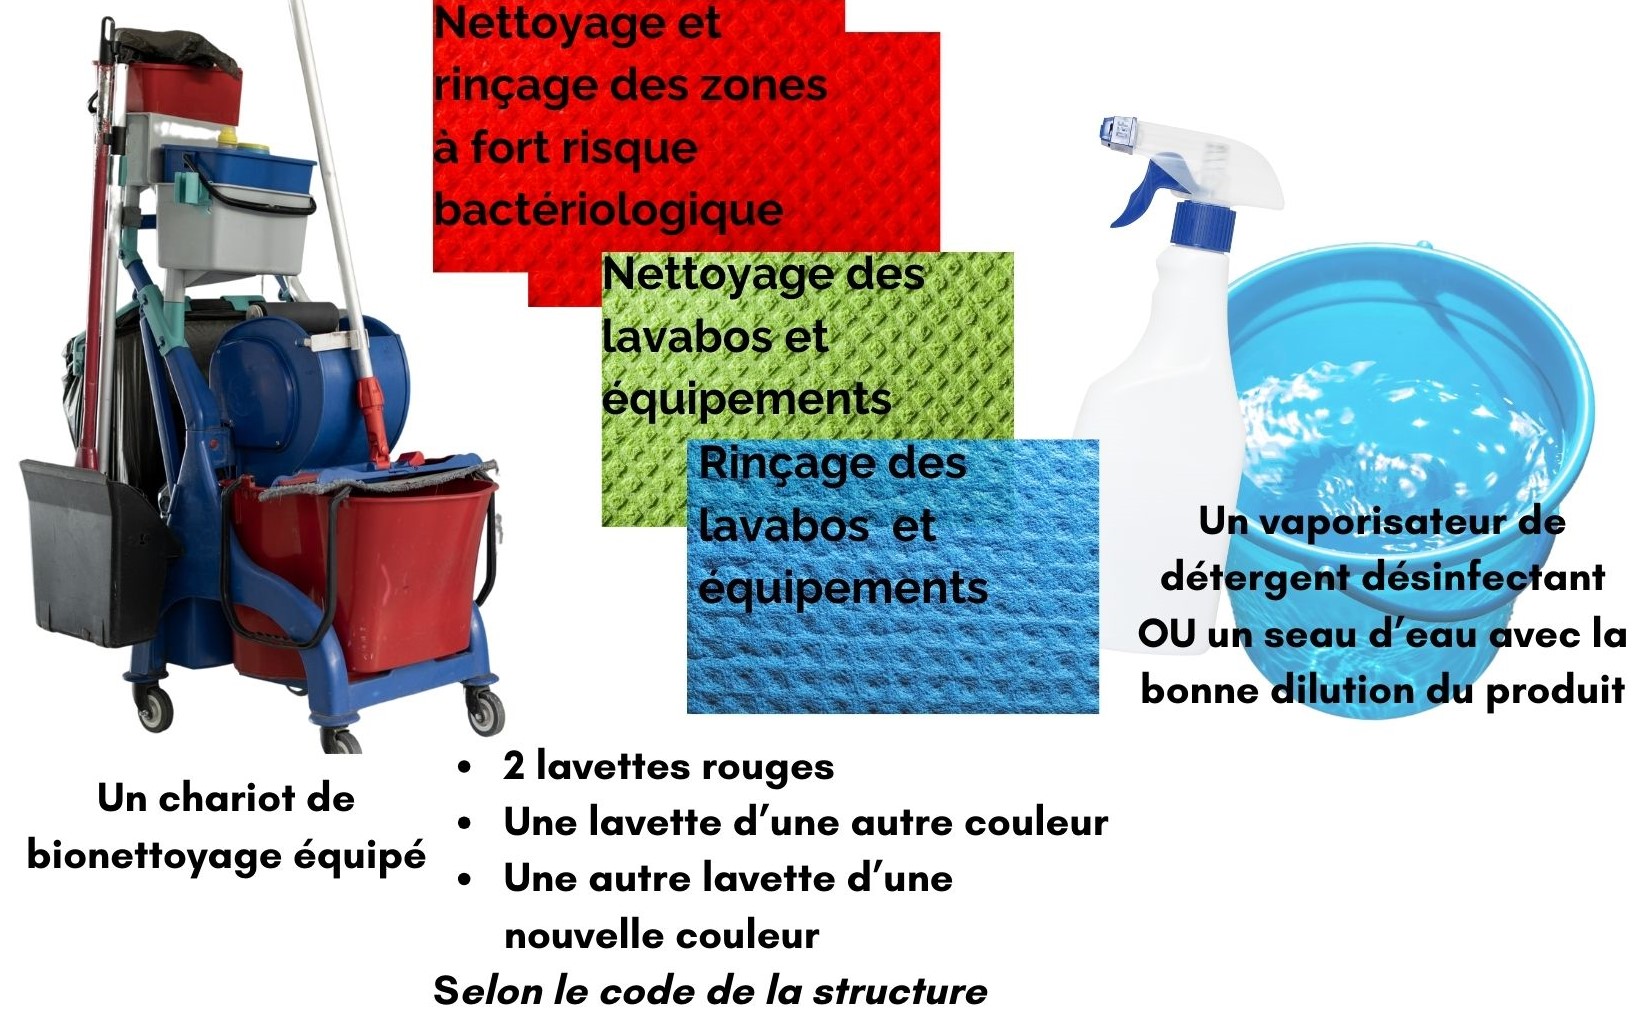 matériel nettoyage sanitaires: chariot équipé, 2 lavettes rouges, 2 autres lavettes de couleur différentes, détergent désinfe